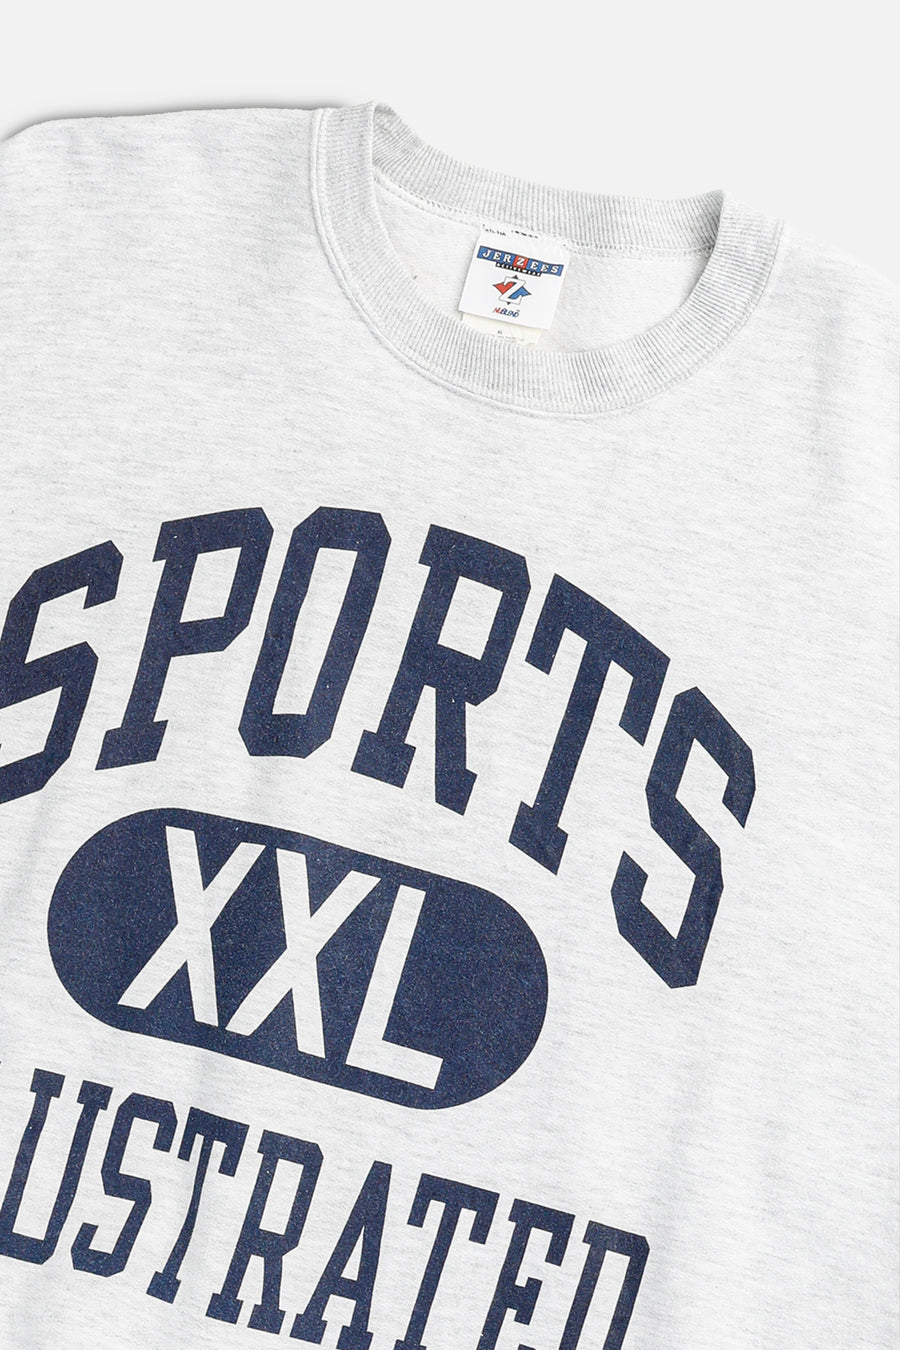 Vintage Sports Illustrated Sweatshirt - XL